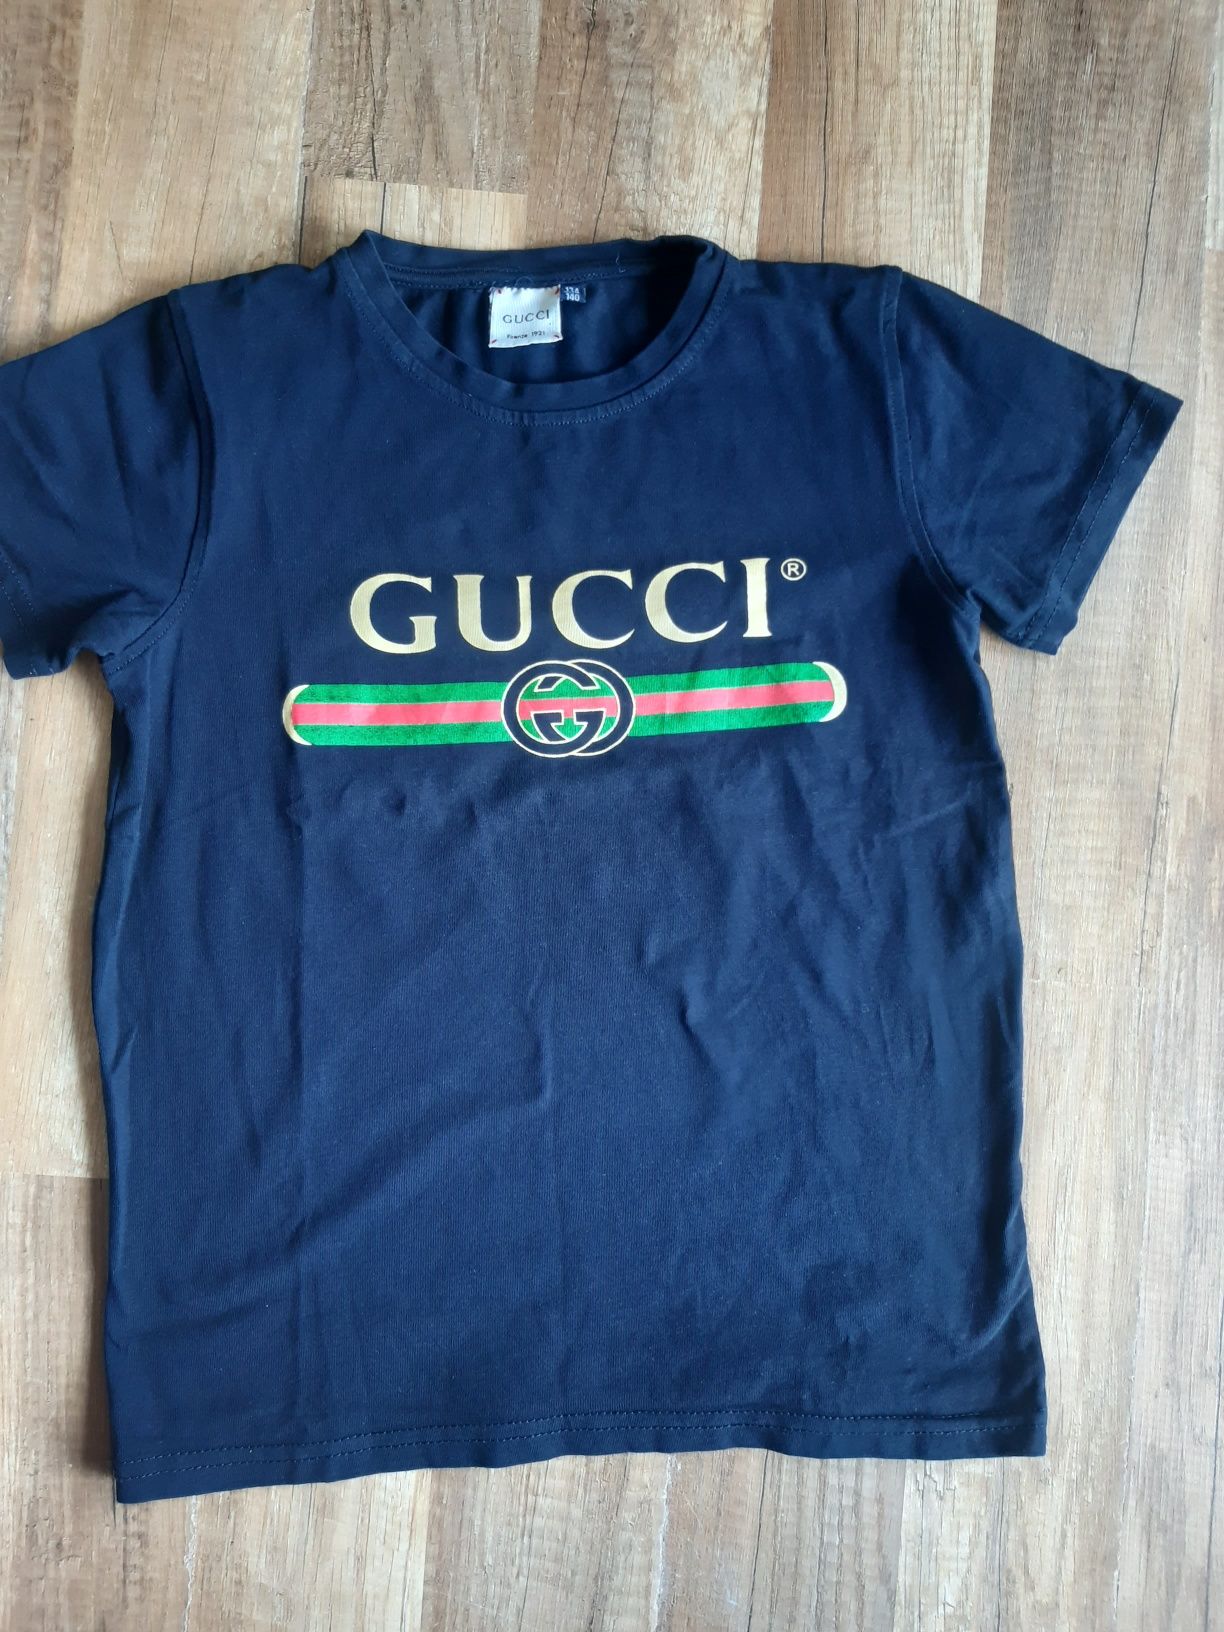 Gucci 134/140 t shirt granatowy koszulka chłopiec